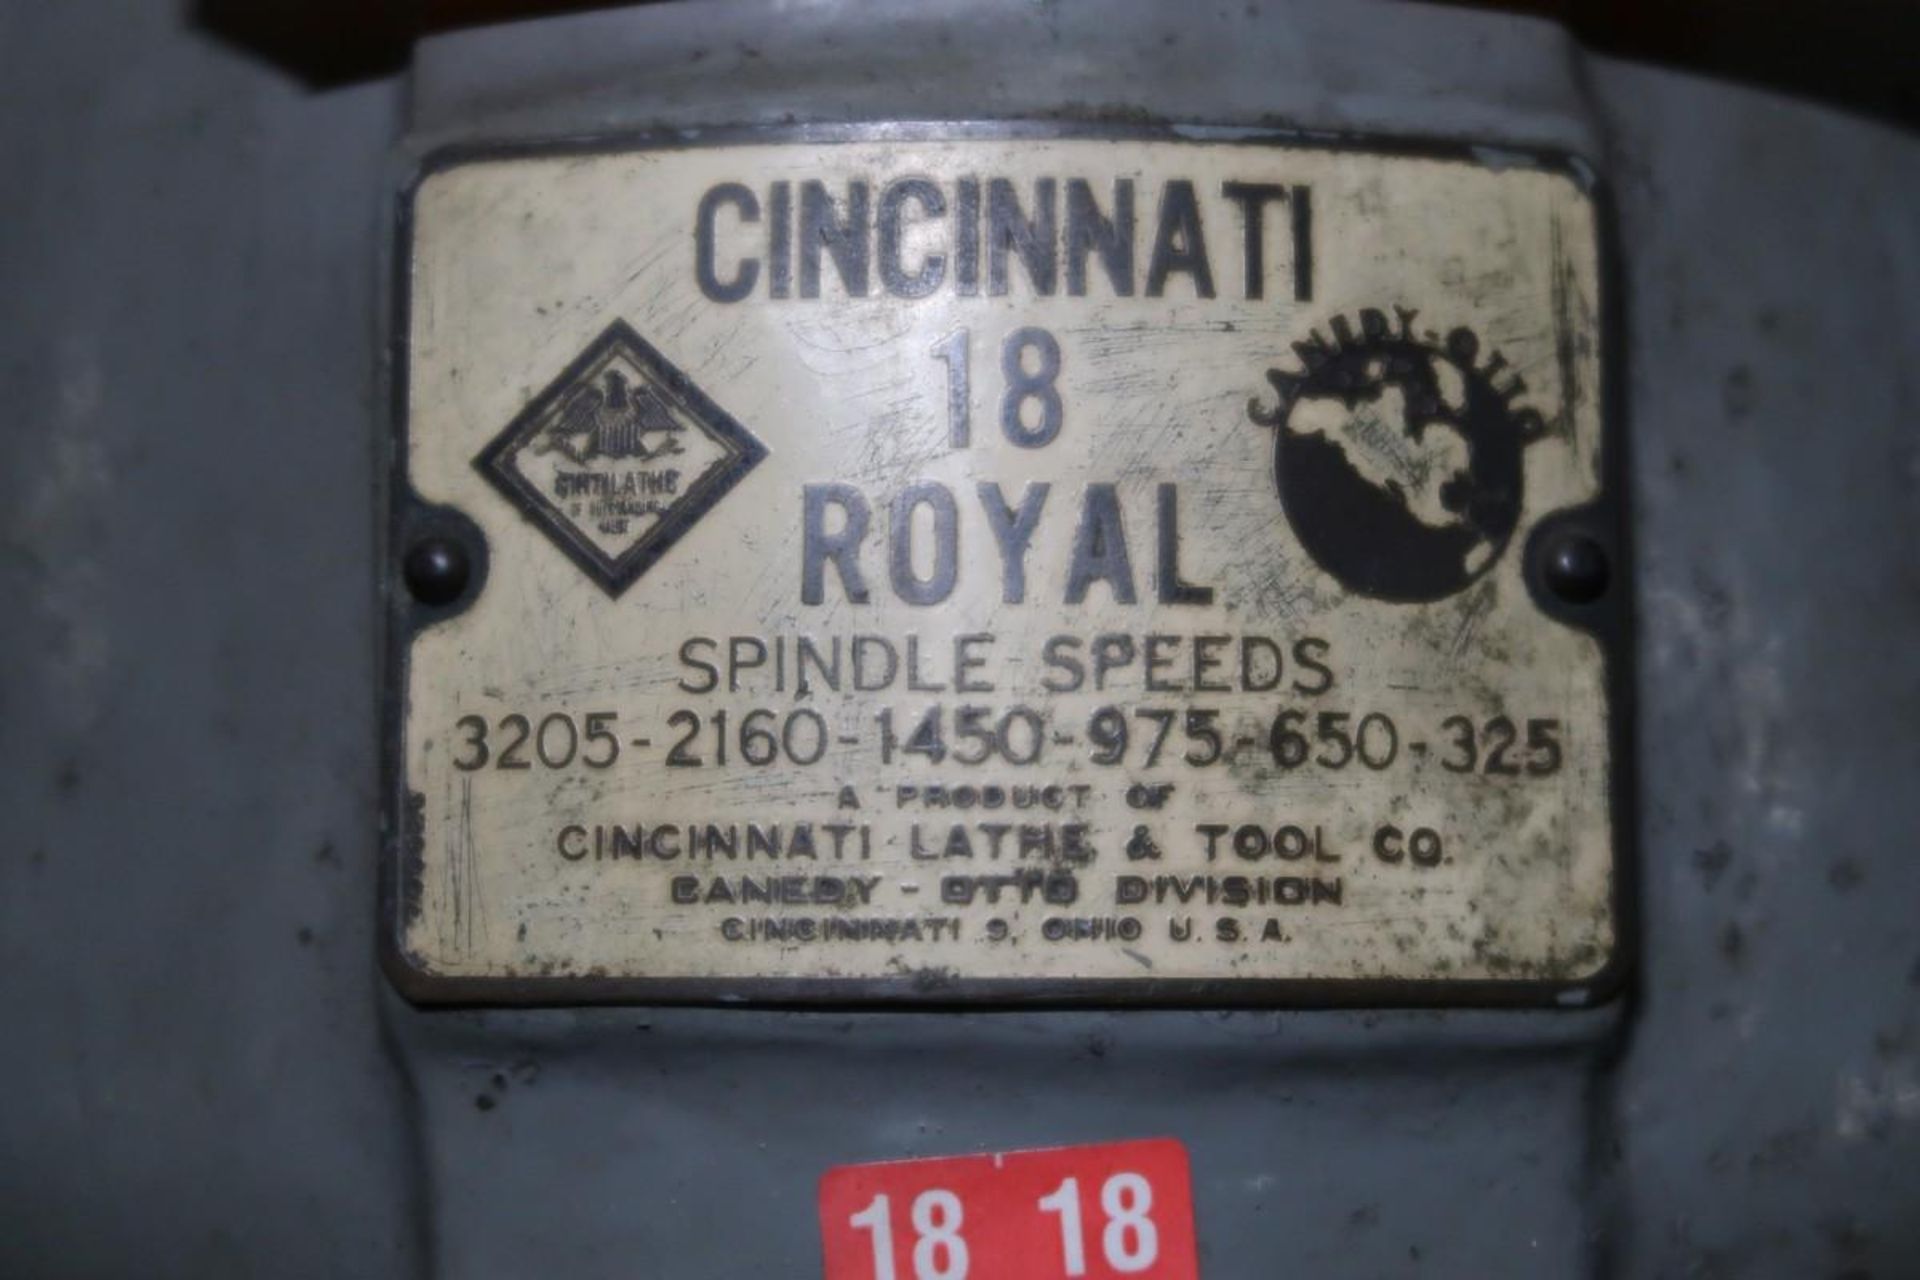 Cincinnati 18 Royal 18" Drill Press - Image 5 of 5